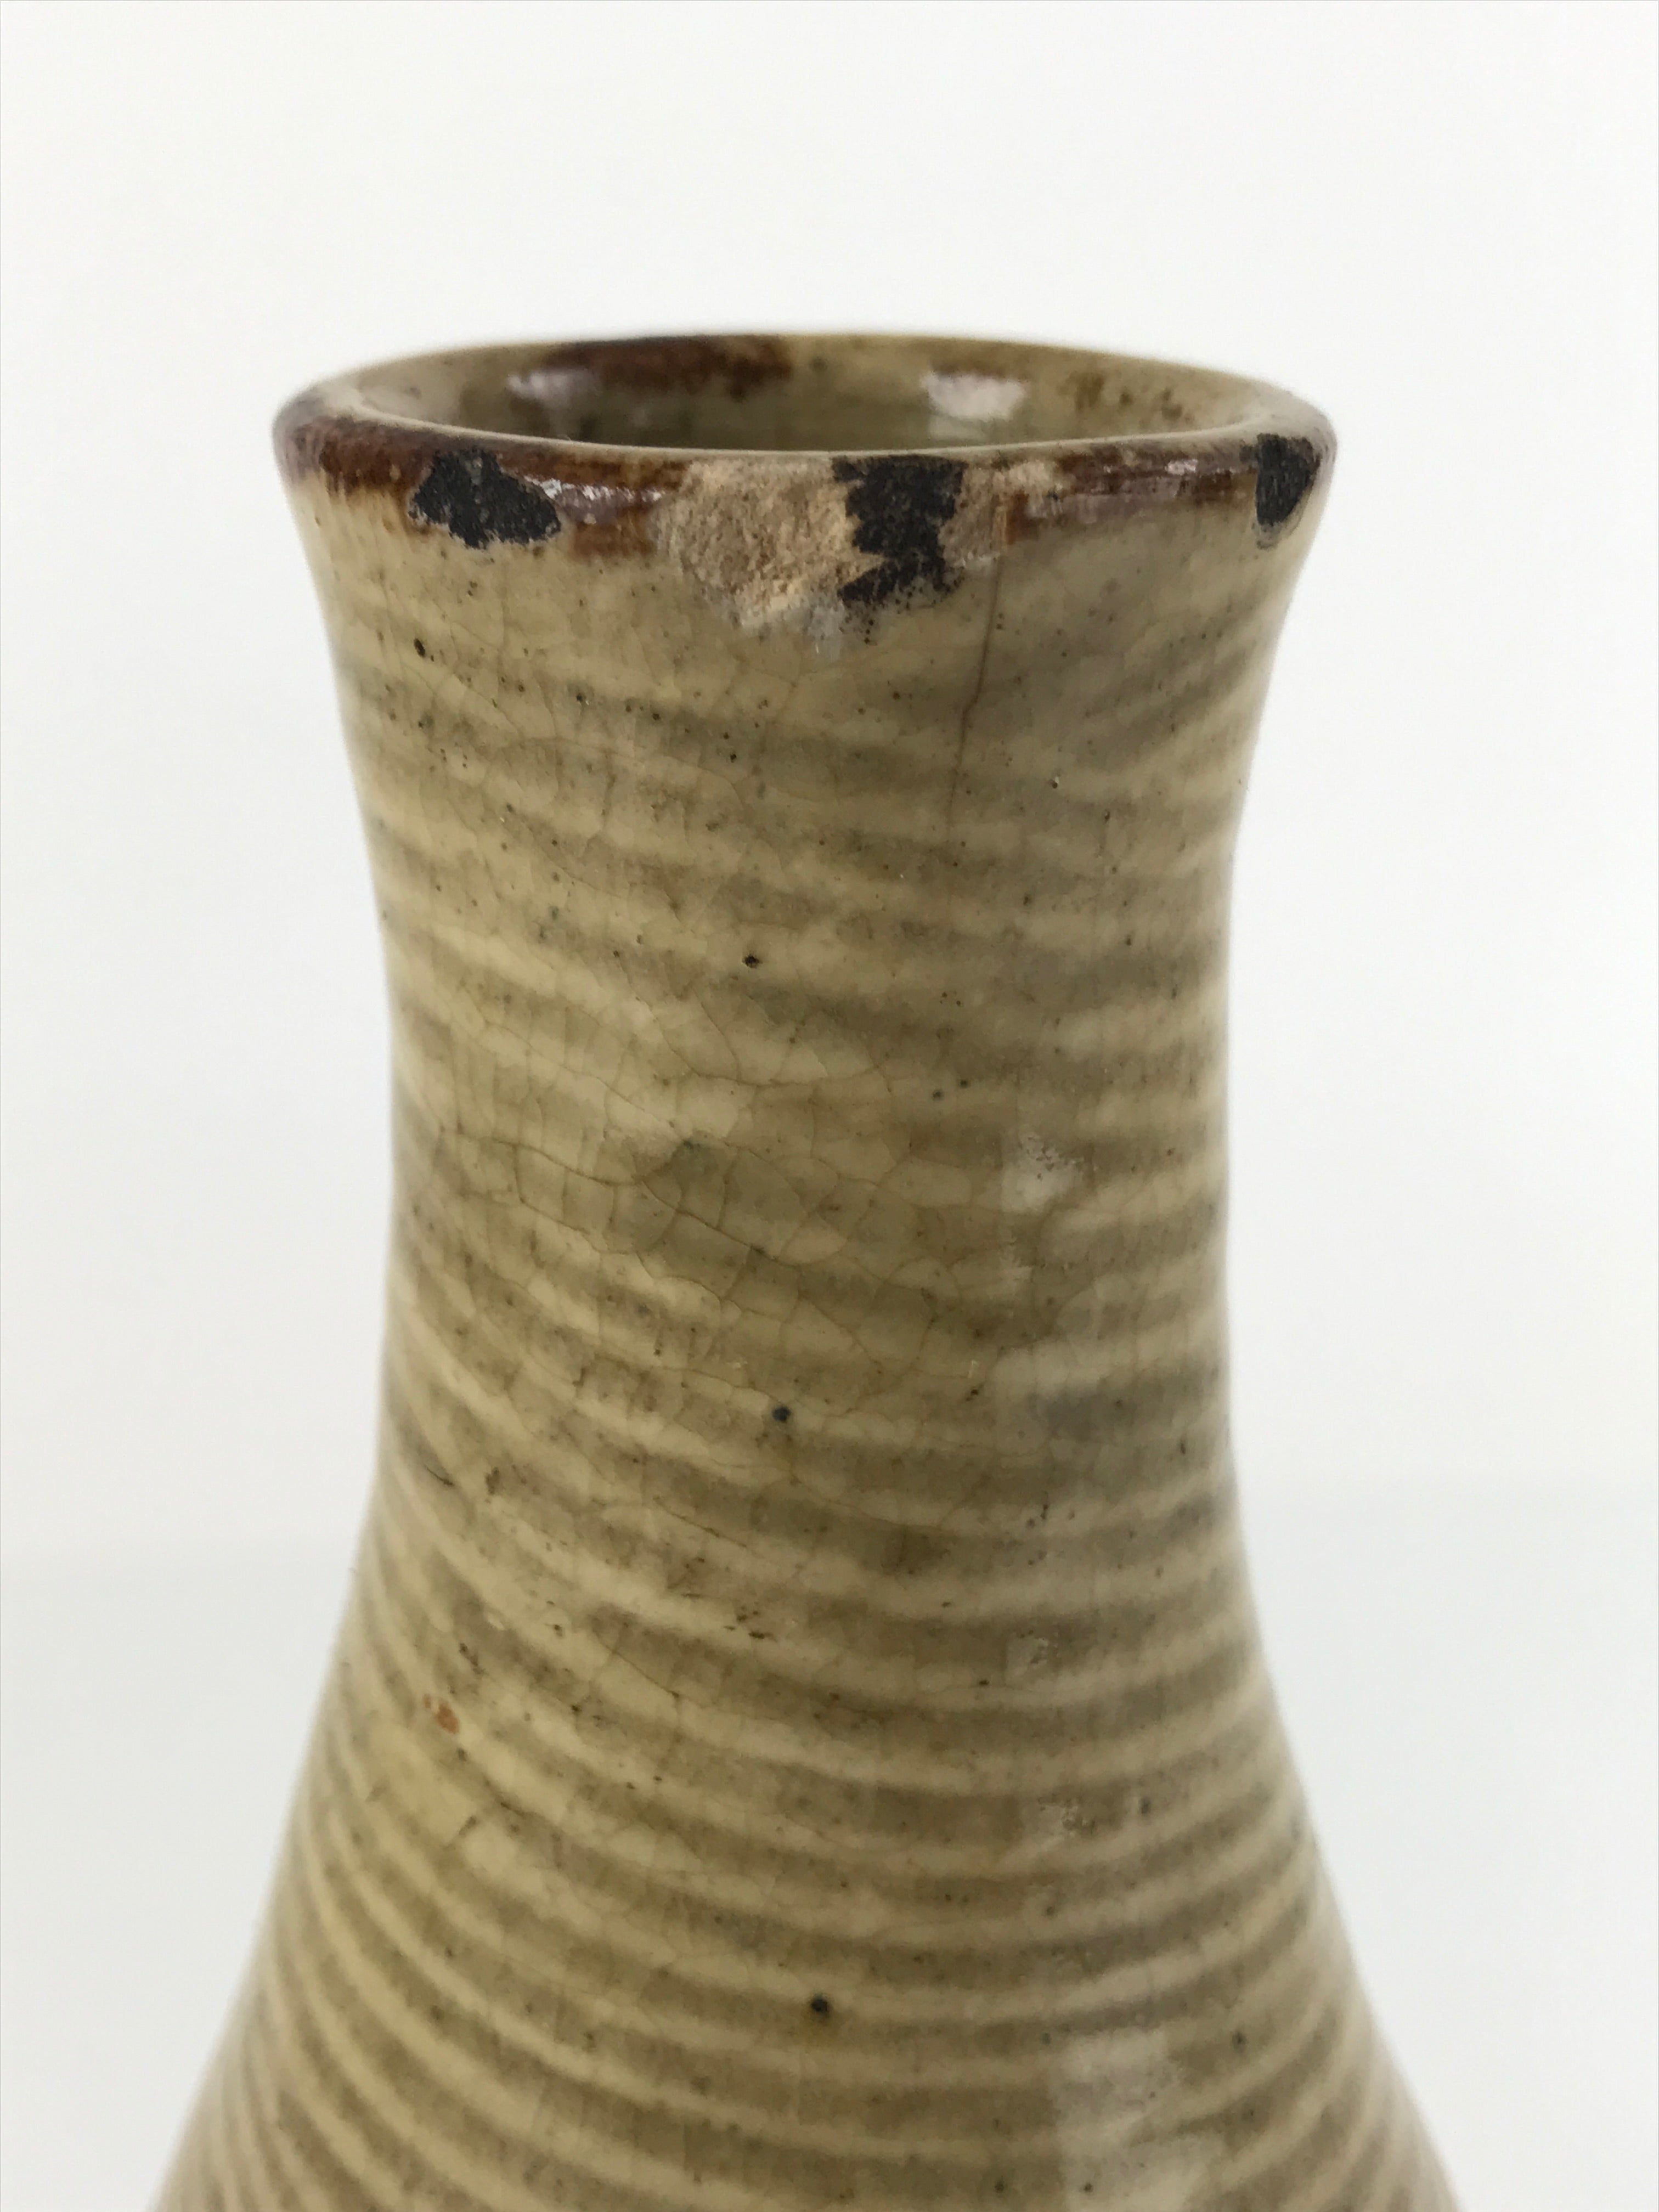 Antique Japanese Ceramic Sake Bottle Tokkuri Large Tall Brown Line Design TS628